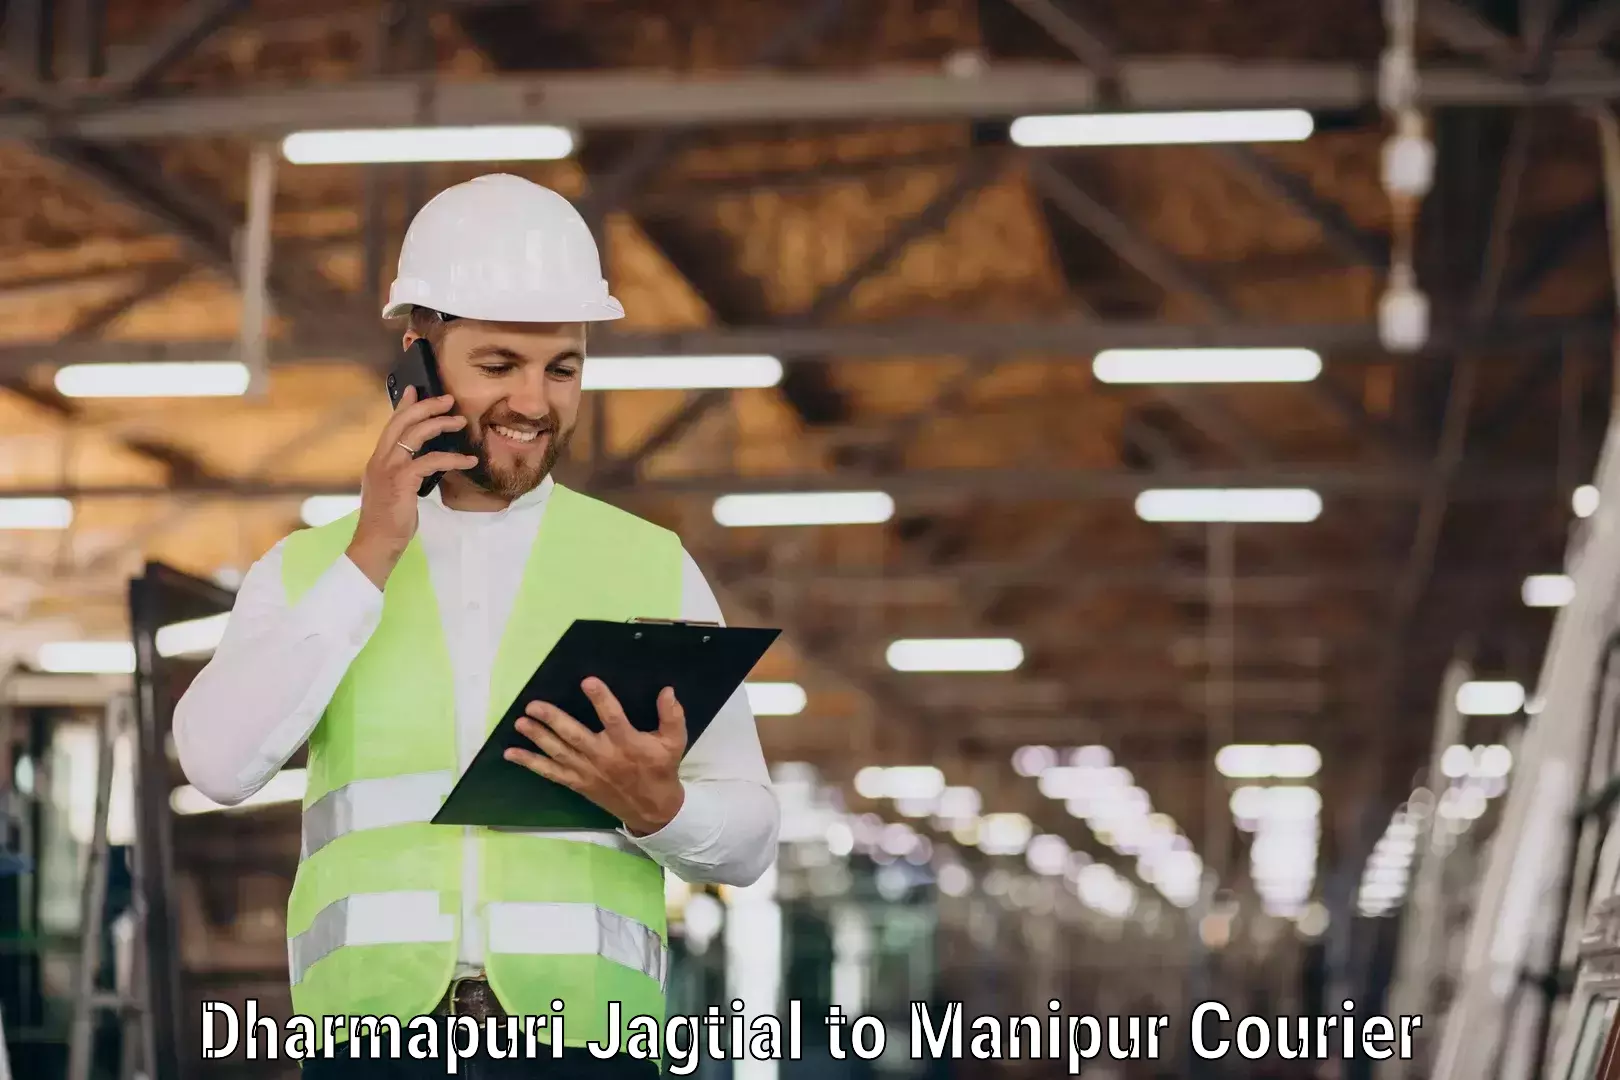 User-friendly courier app Dharmapuri Jagtial to Senapati